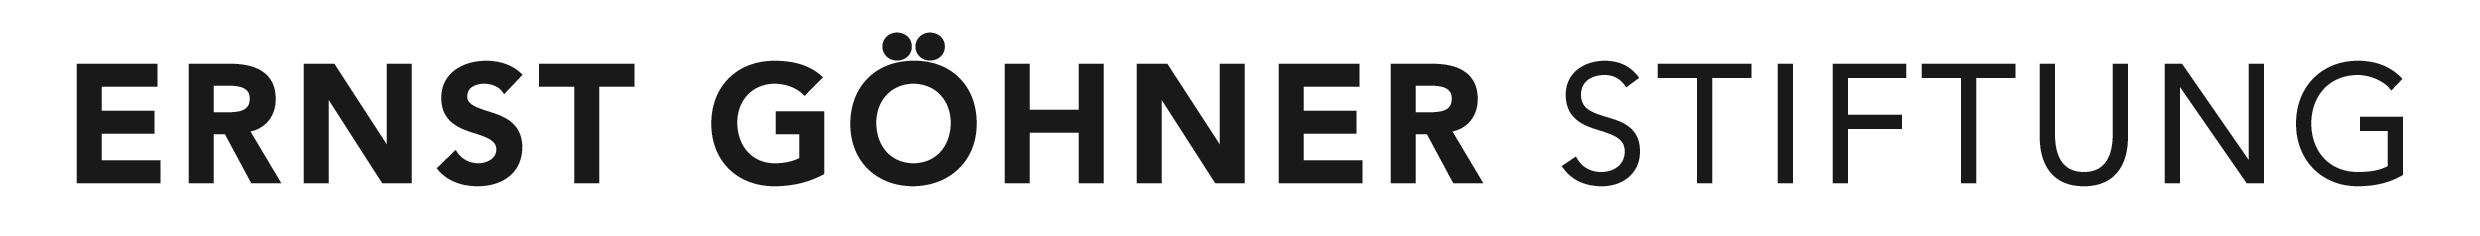 logo-ernst-gohner-stiftung